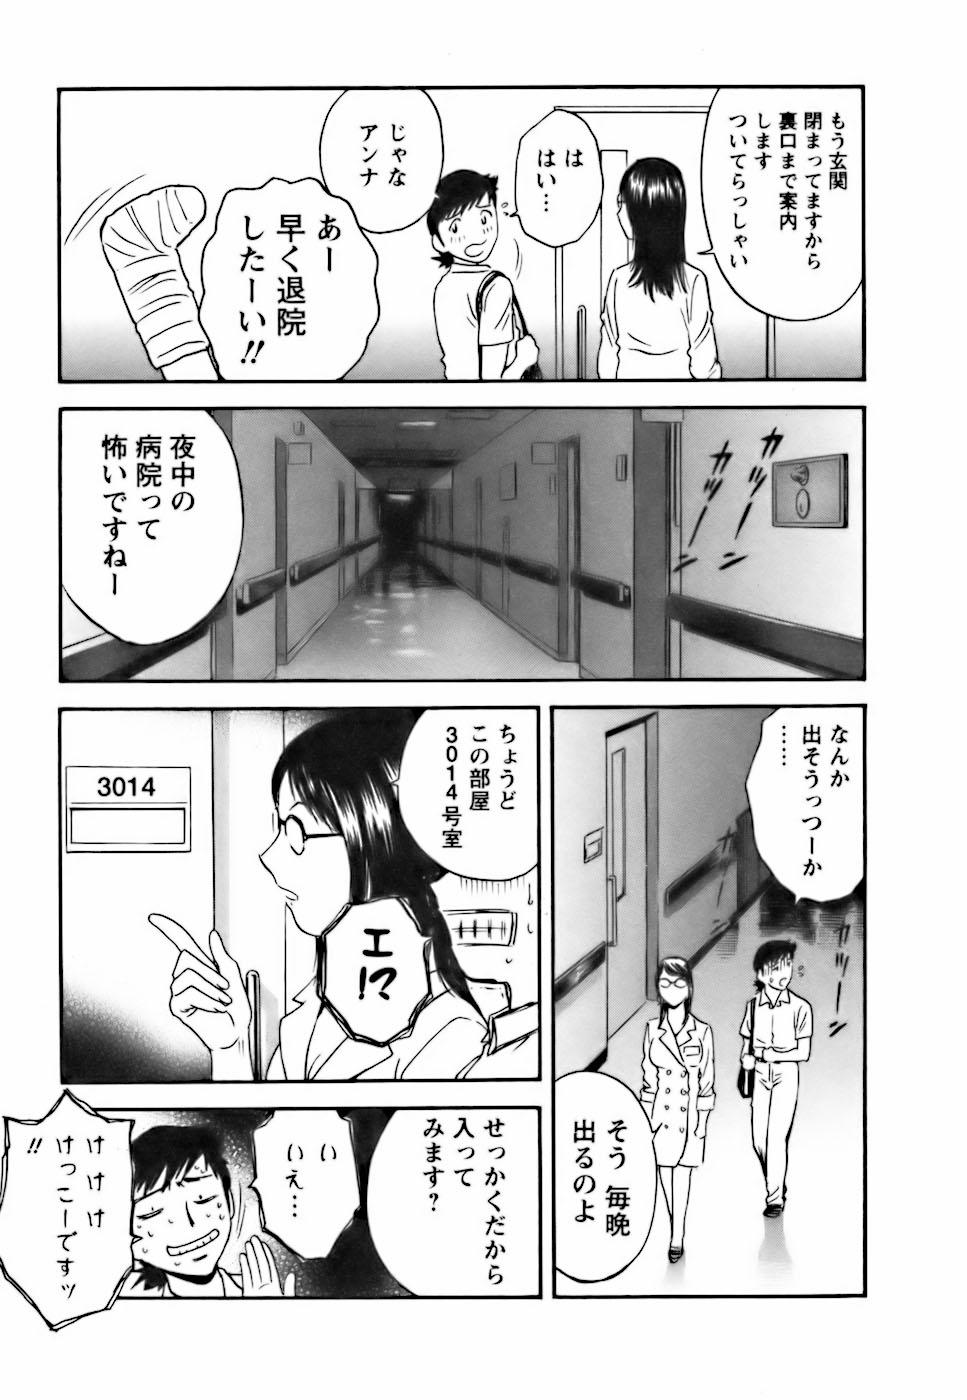 [Hidemaru] Mo-Retsu! Boin Sensei (Boing Boing Teacher) Vol.3 76